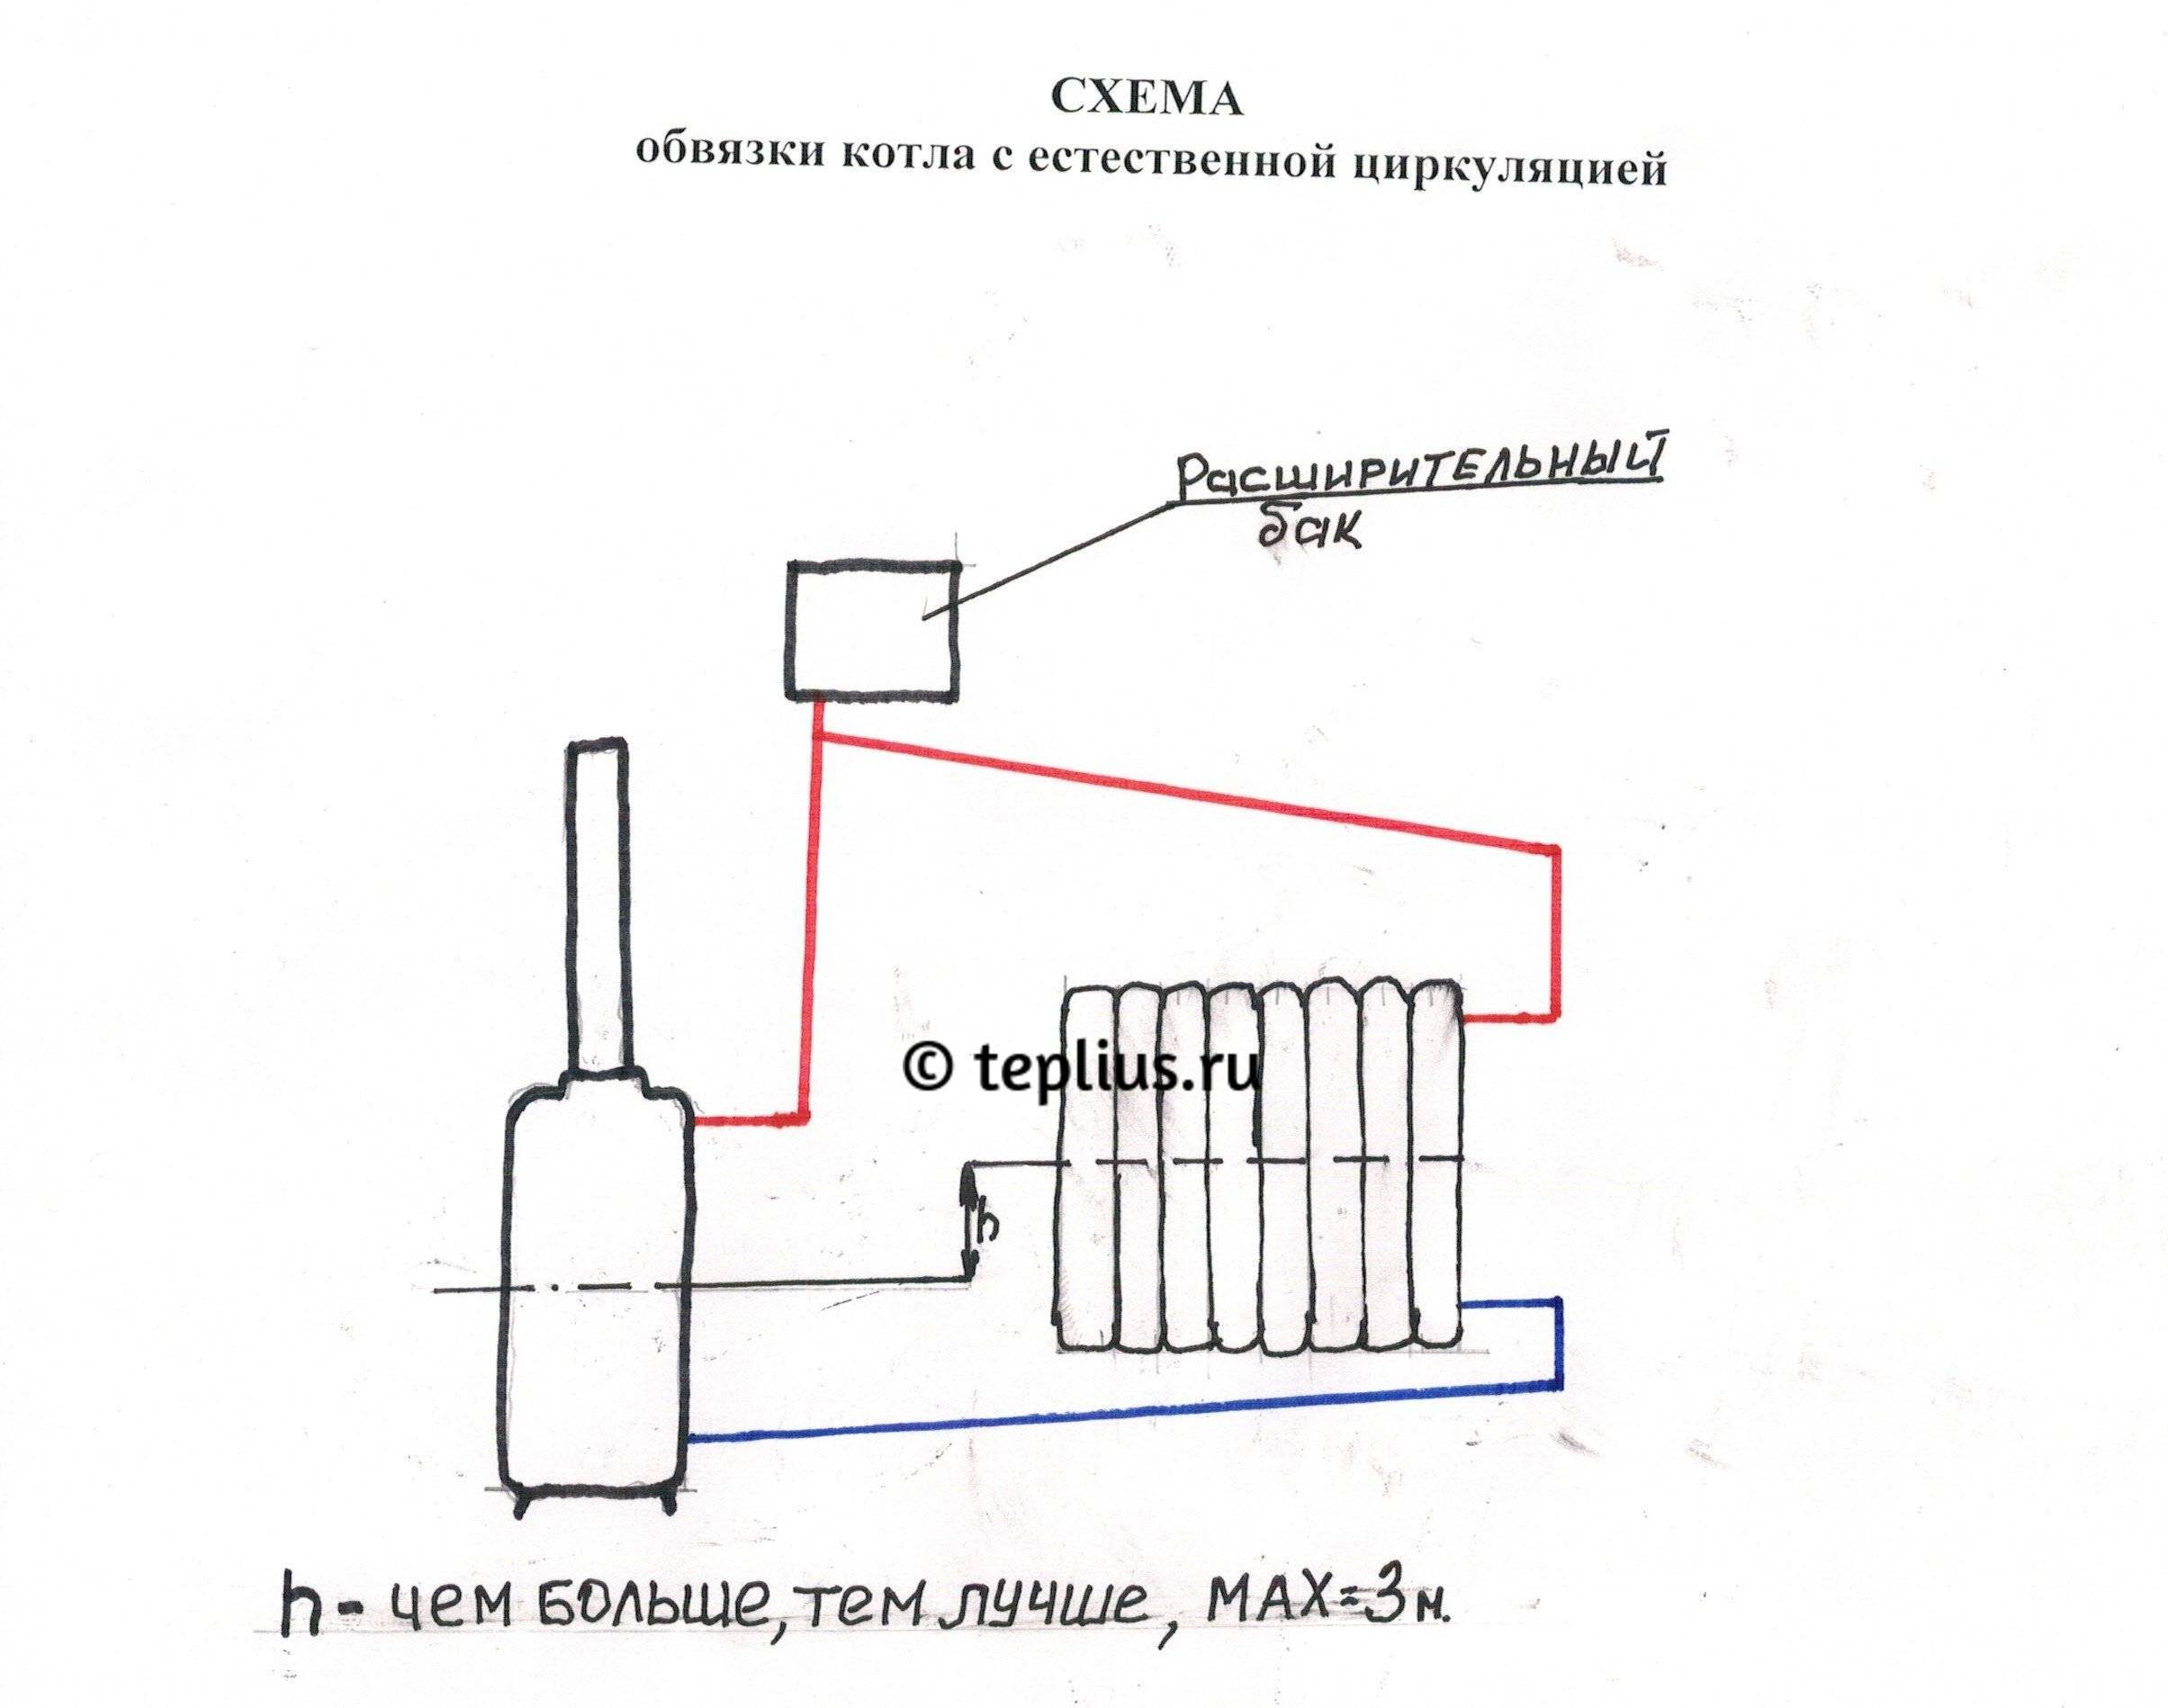 Система водяного отопления с естественной циркуляцией типовые схемы Аква-Ремонт